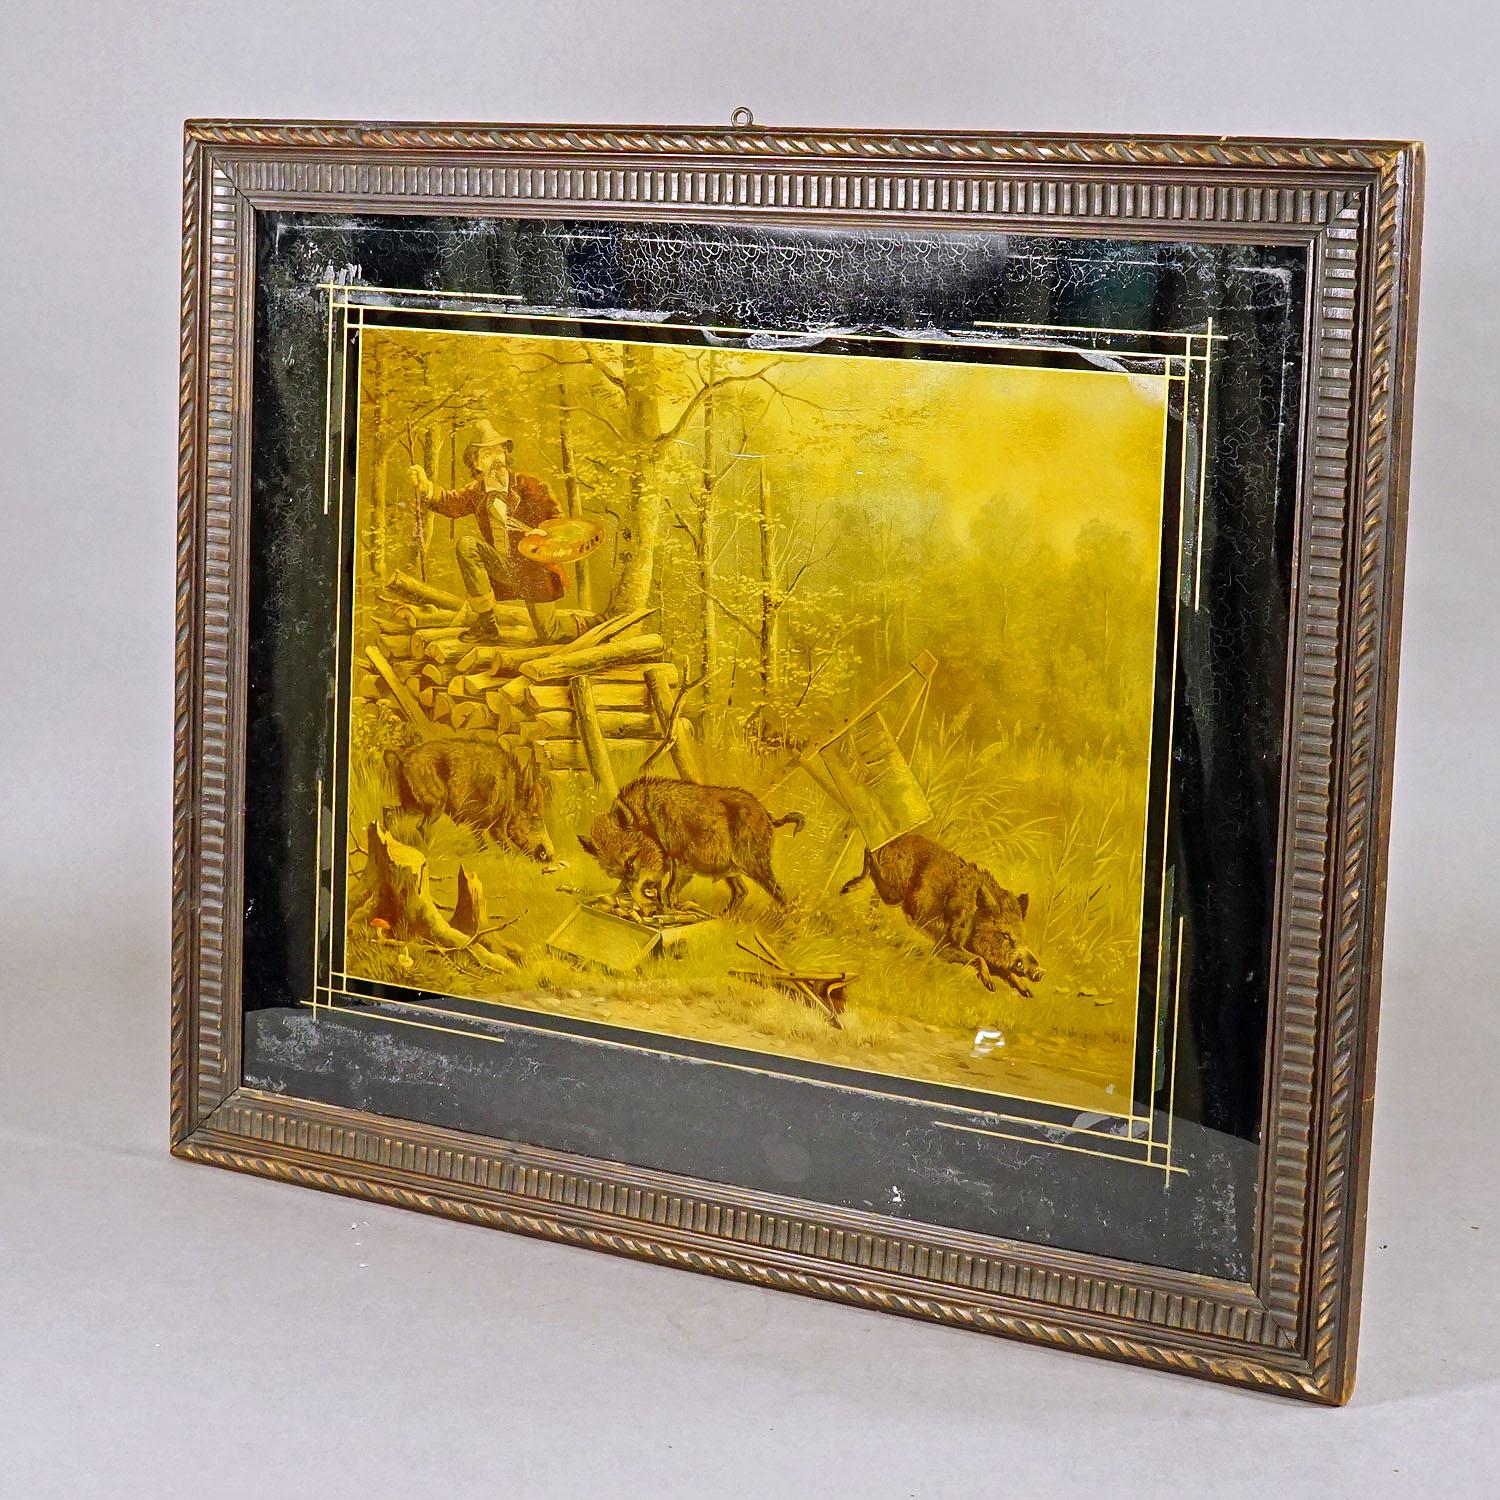 Forêt-Noire Impression ancienne avec une scène humoristique représentant des sangles de sauvages et un peintre en vente